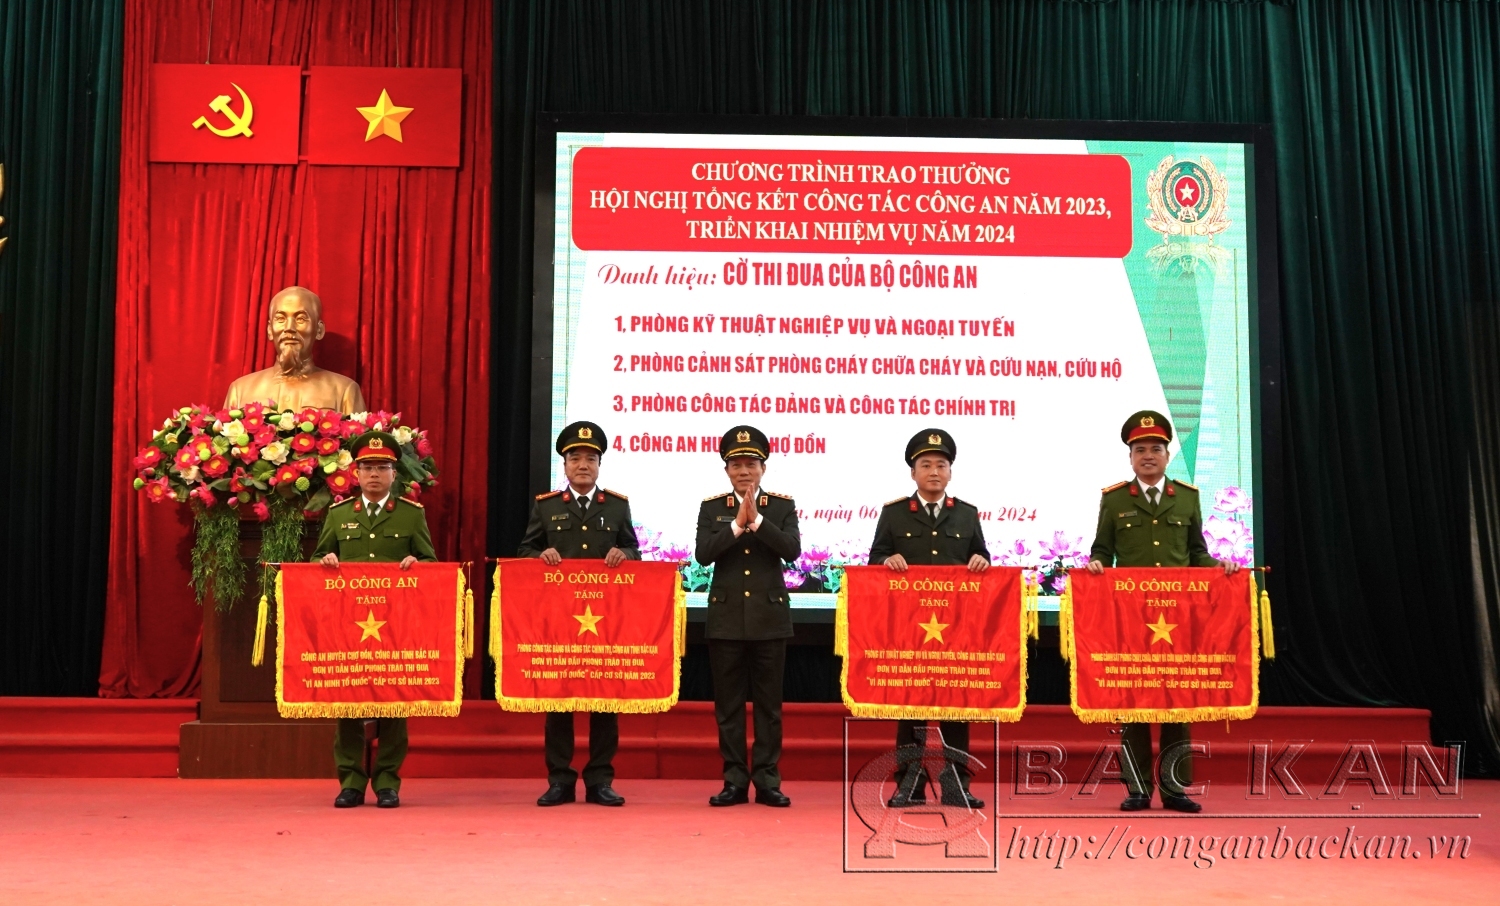 Phòng Kỹ thuật nghiệp vụ và ngoại tuyến (thứ 2 từ phải sáng trái) vinh dự được Thượng tướng Lương Tam Quang, Bộ Trưởng Bộ Công an khi đó là Thứ trưởng Bộ Công an tặng Cờ thi đua xuất sắc năm 2023.